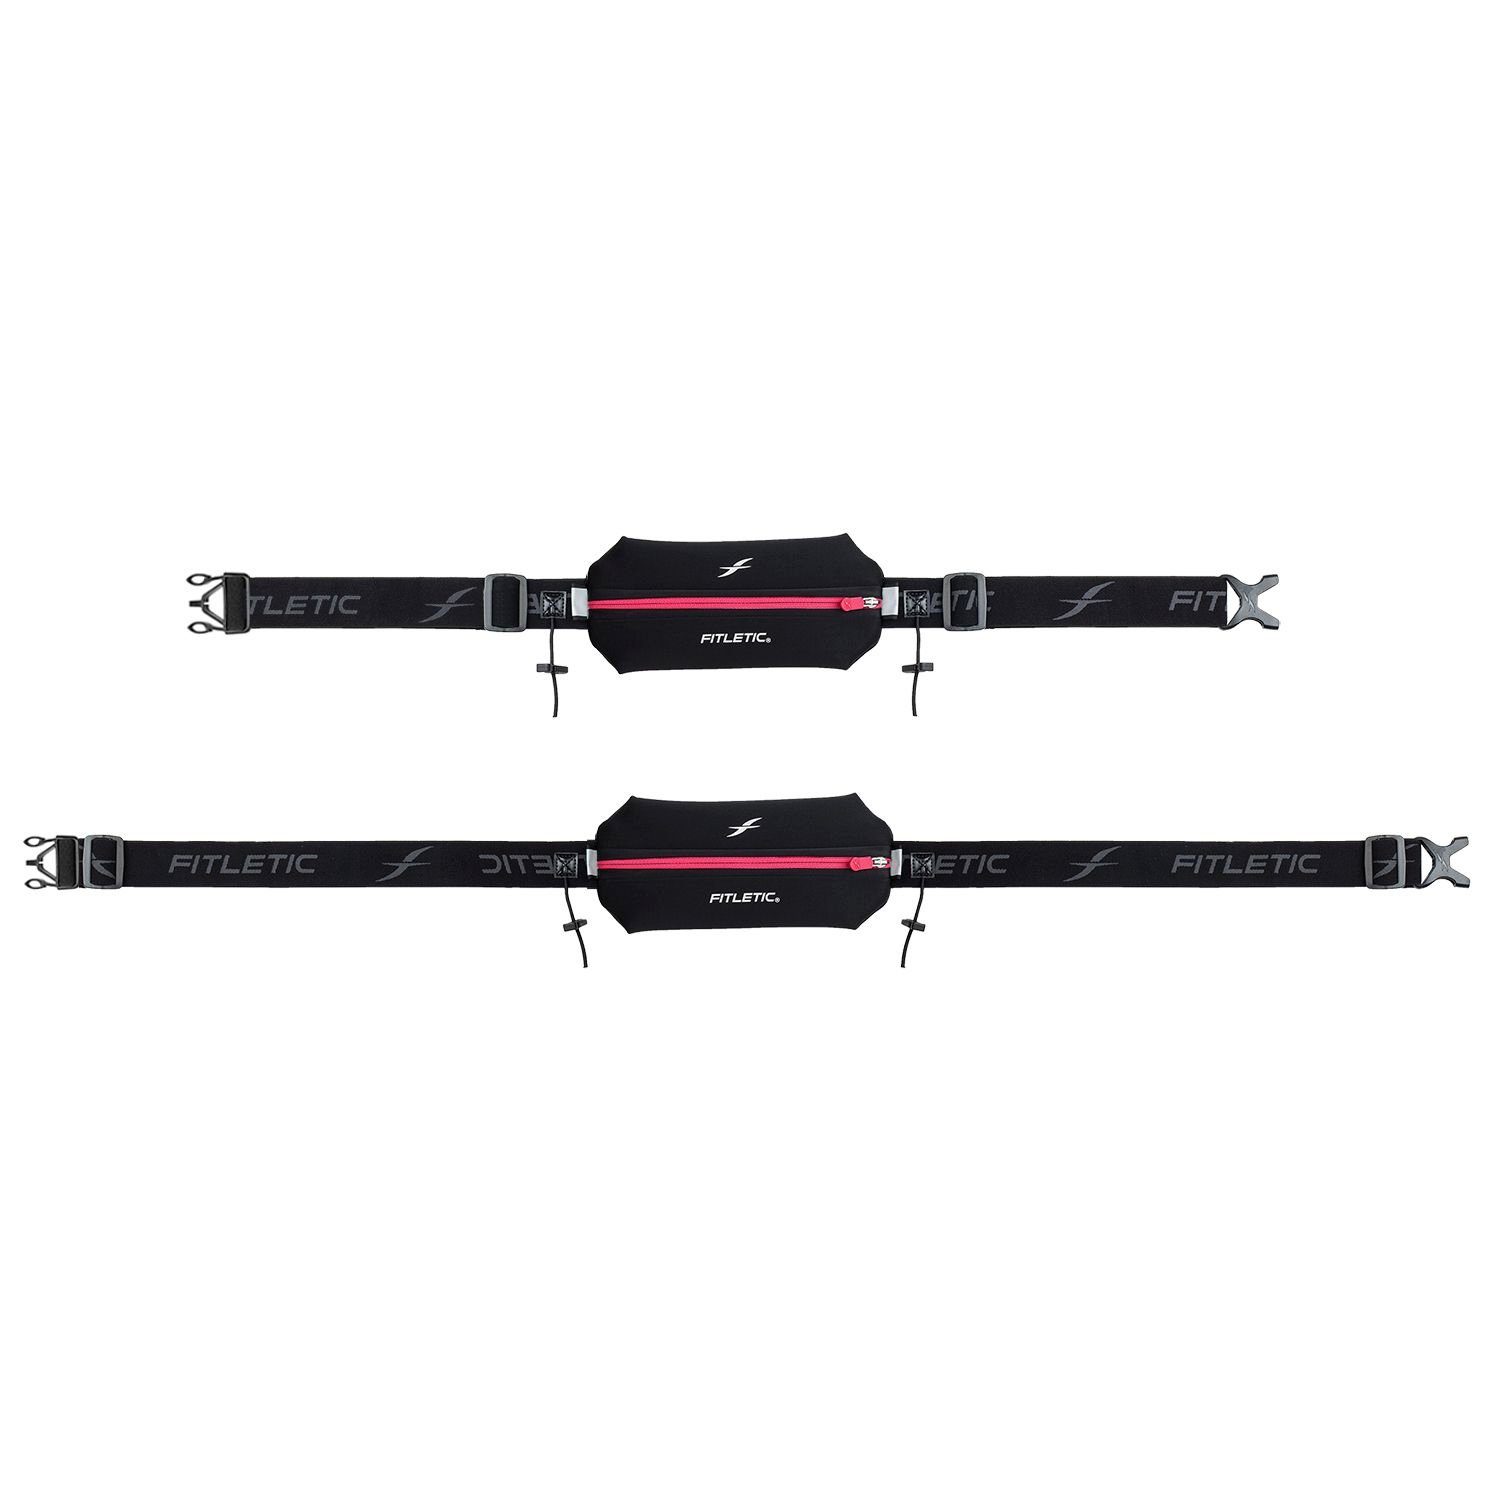 Fitletic Laufgürtel Fitletic - /Pink Laufausrüstung Handy, Fitnessgürtel Premium Sportgürtel, für "Neo 1" Schwarz Laufgürtel